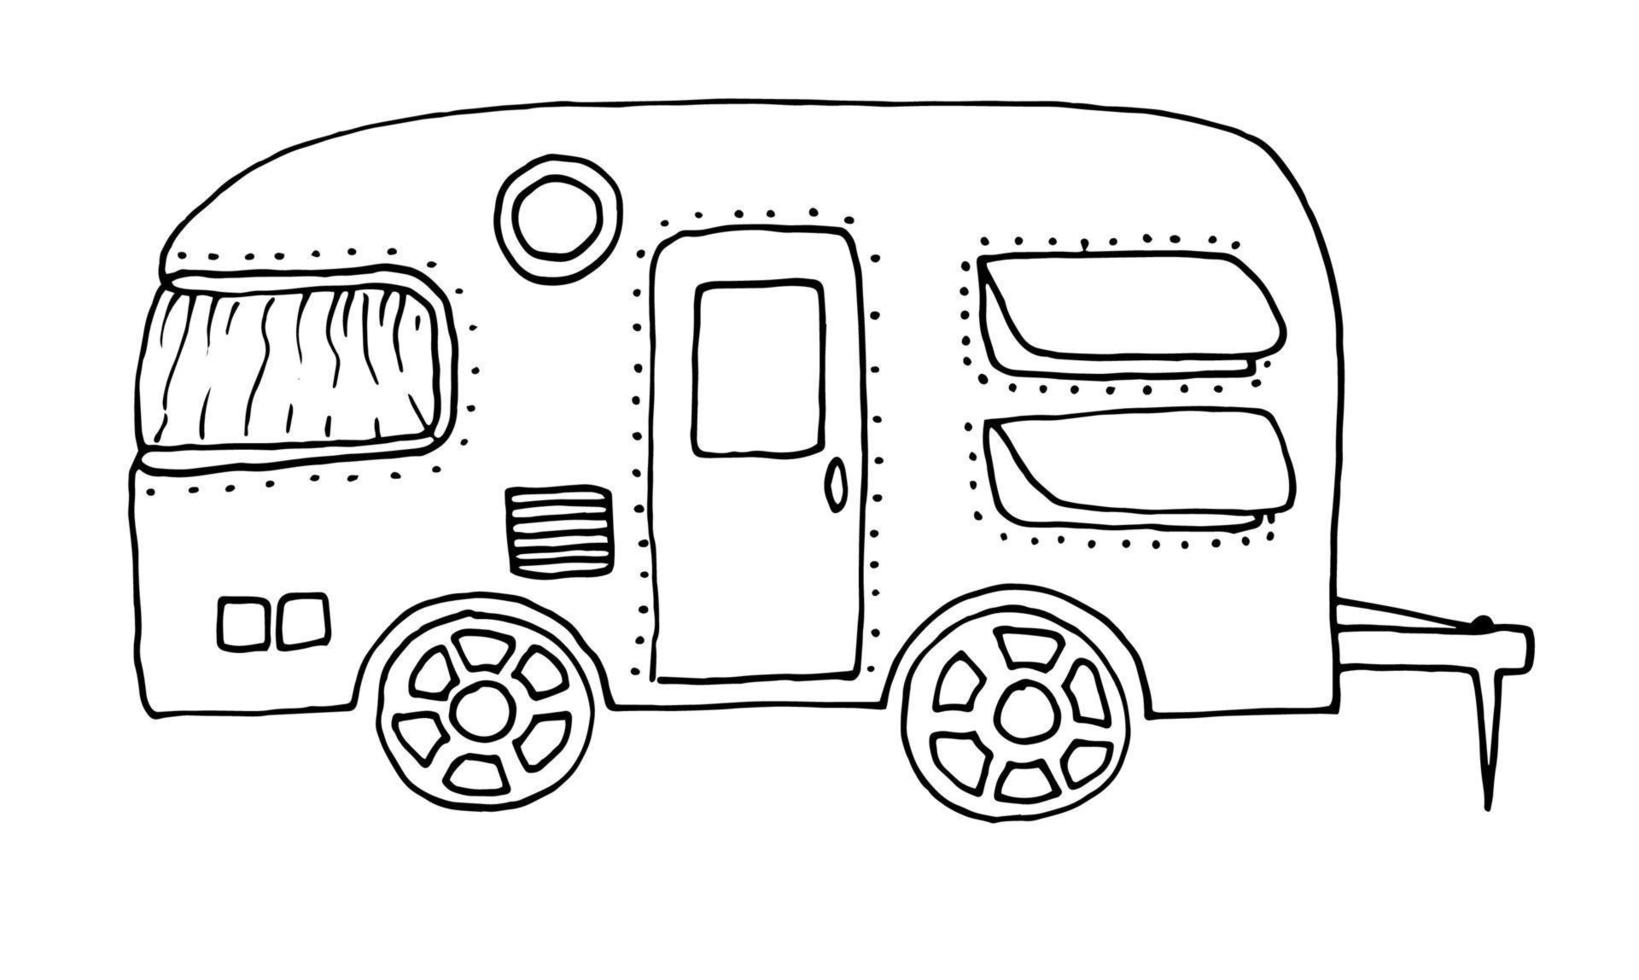 camper, ricreativo veicolo, veicoli, camper, furgoni, roulotte. vettore illustrazione disegnato a mano nel schema stile scarabocchio